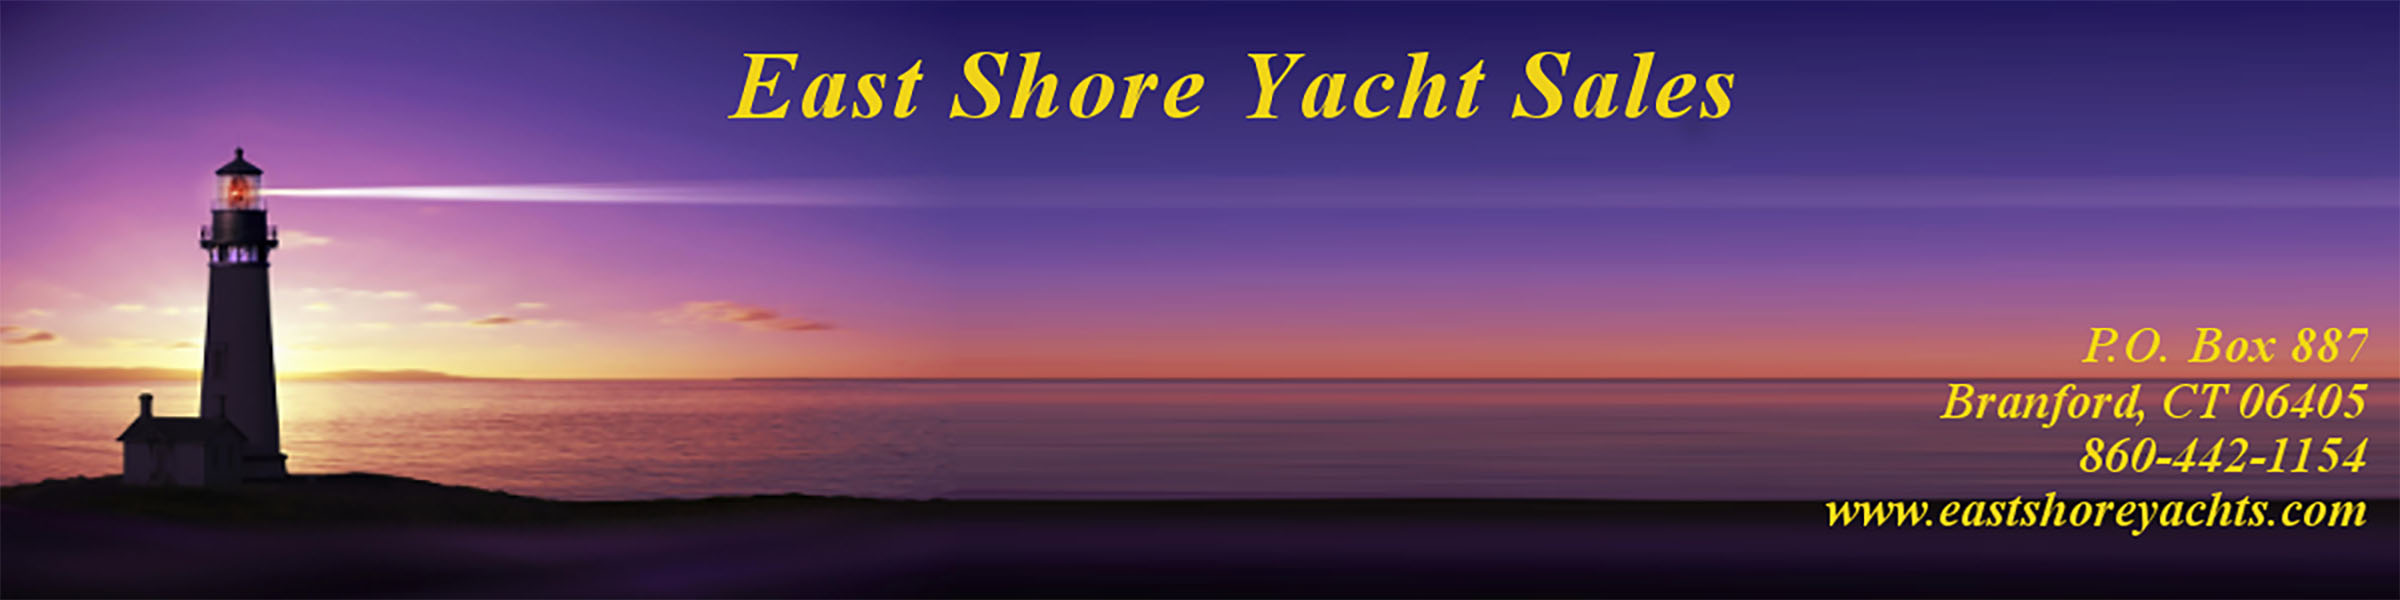 East Shore Yacht Sales